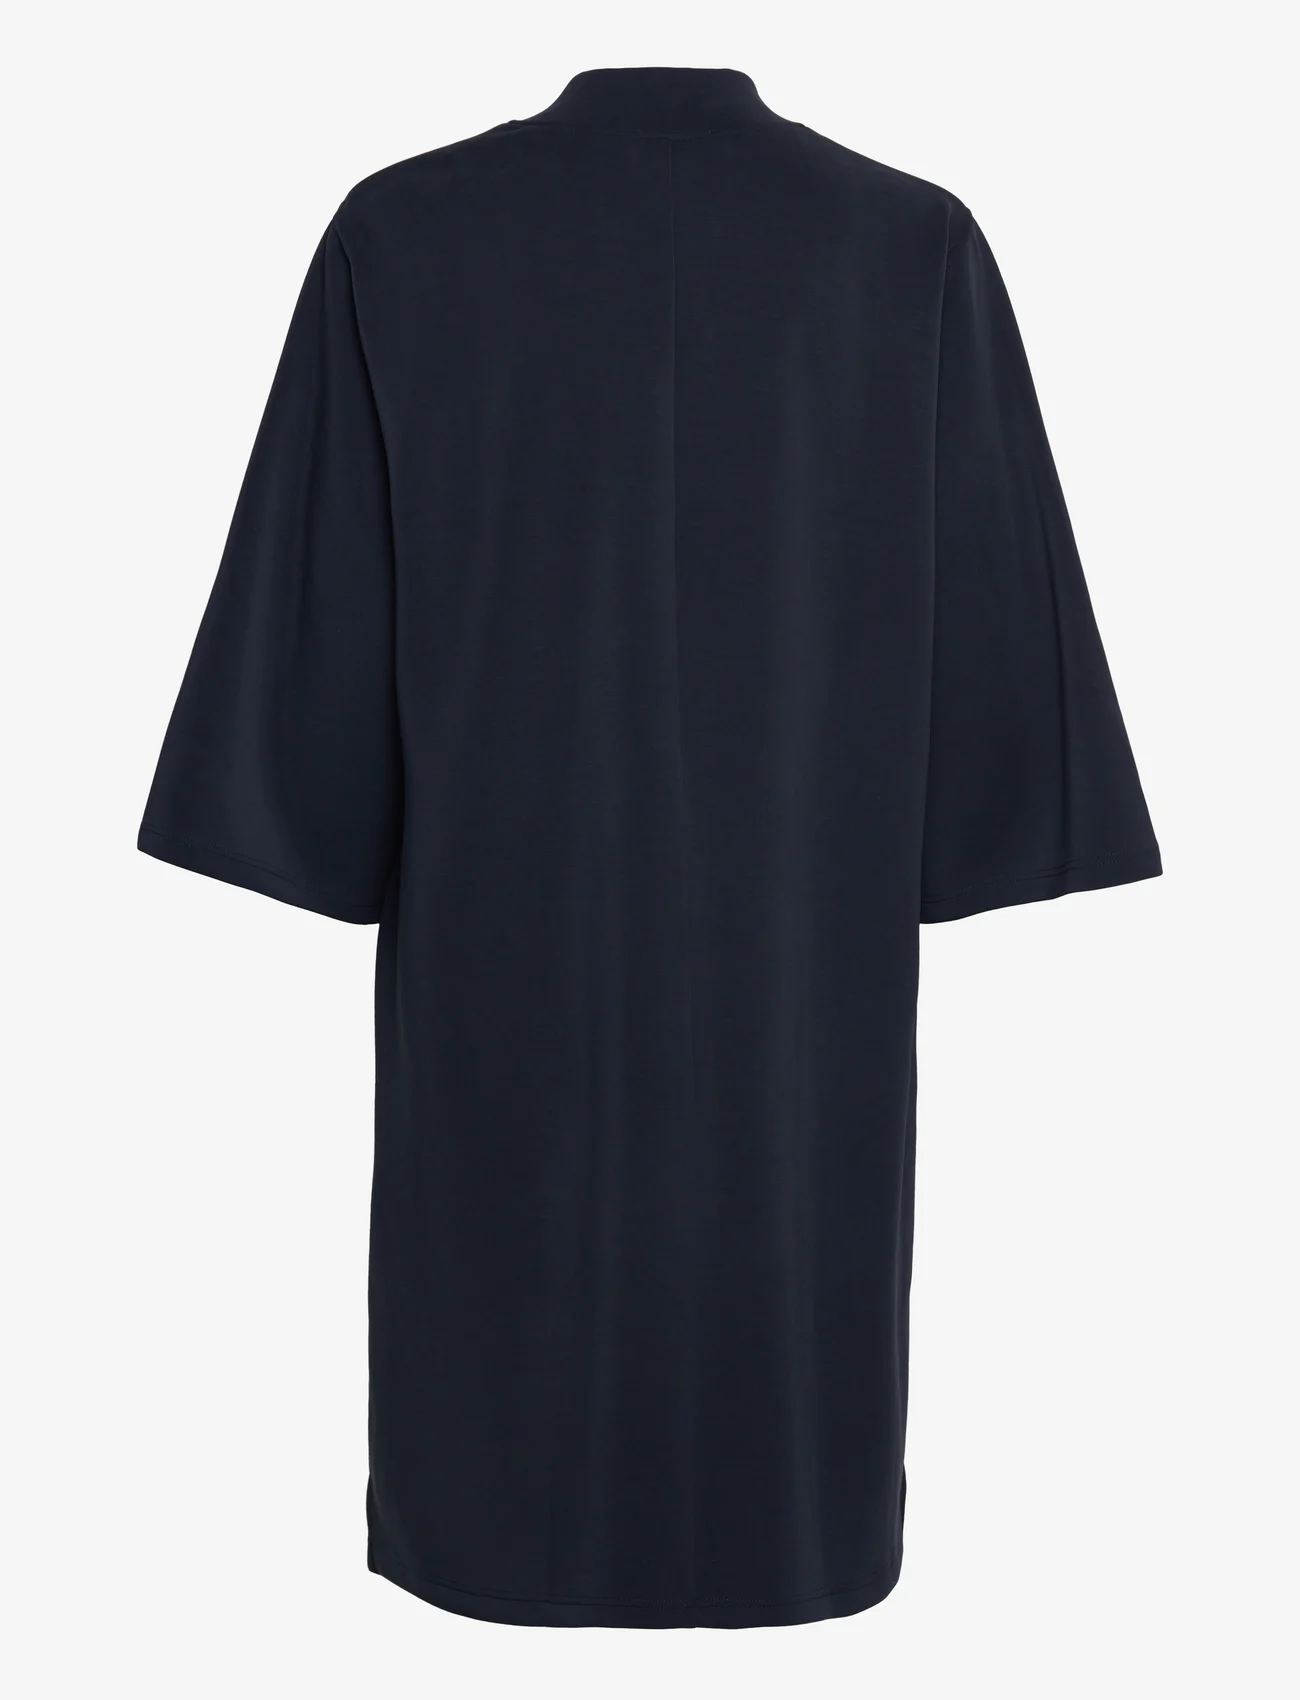 My Essential Wardrobe - ElleMW Lana Dress - t-shirt-kleider - dark sapphire blue - 1